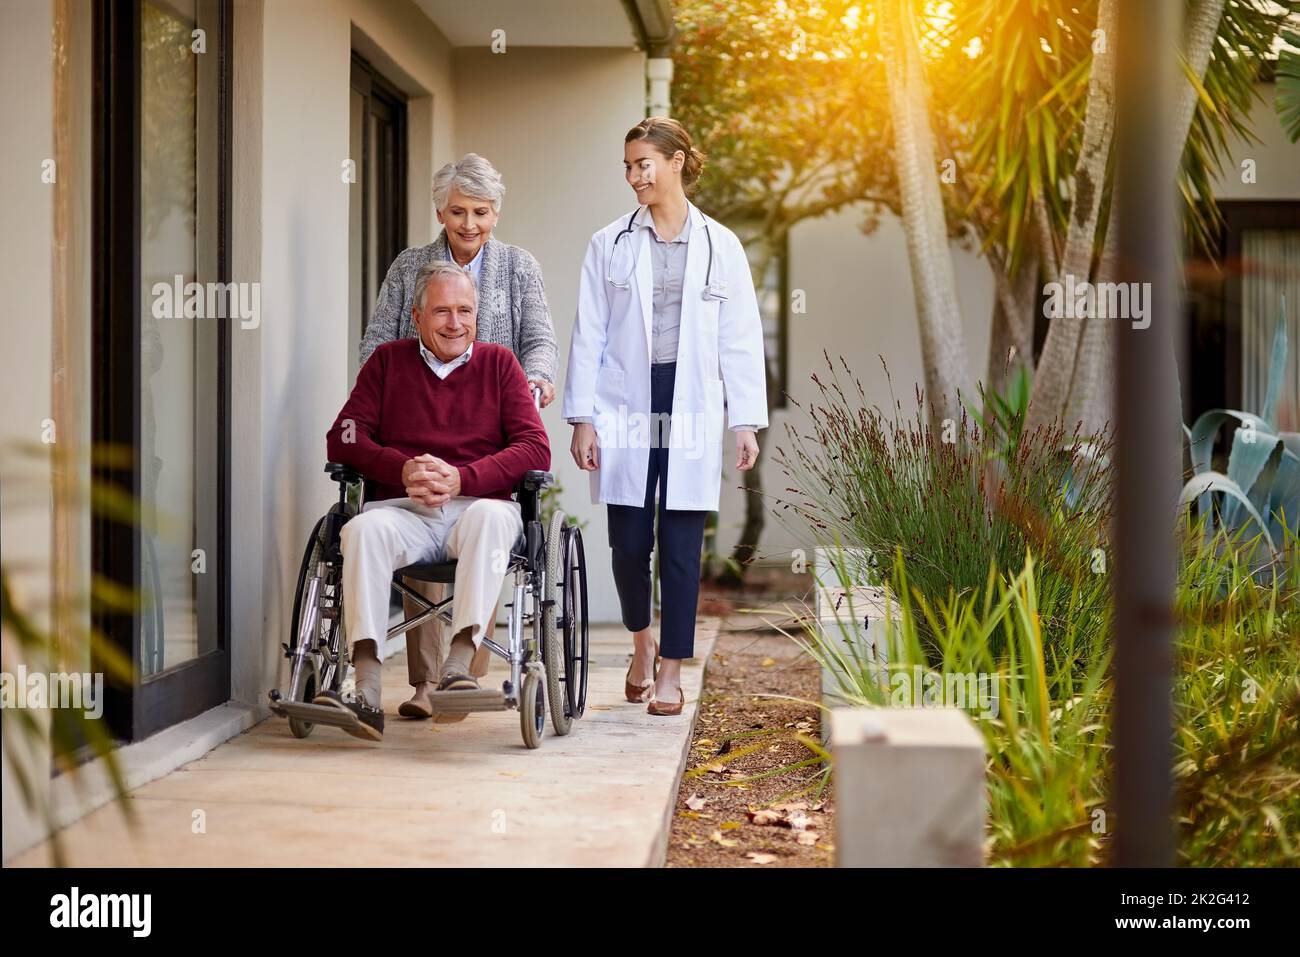 HES desideroso di Vai a casa. Shot di una coppia anziana e di un'infermiera fuori da una casa di cura. Foto Stock